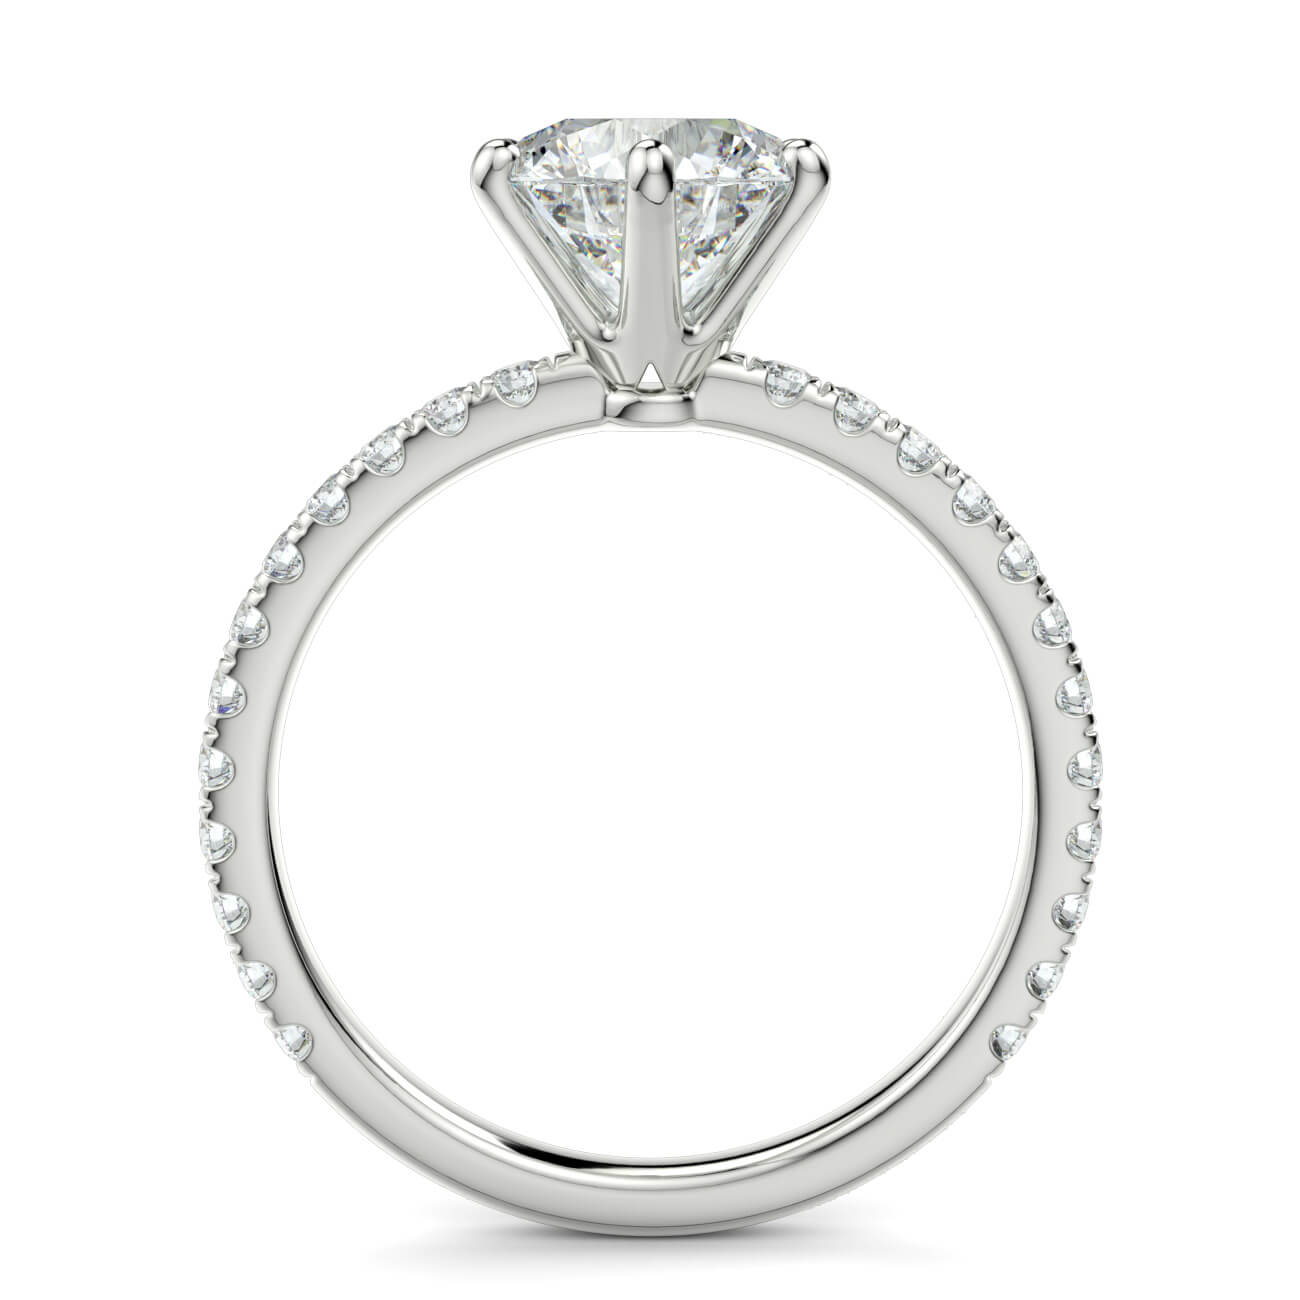 Delicate ‘Liat’ Diamond Engagement Ring in 18k White Gold – Australian Diamond Network